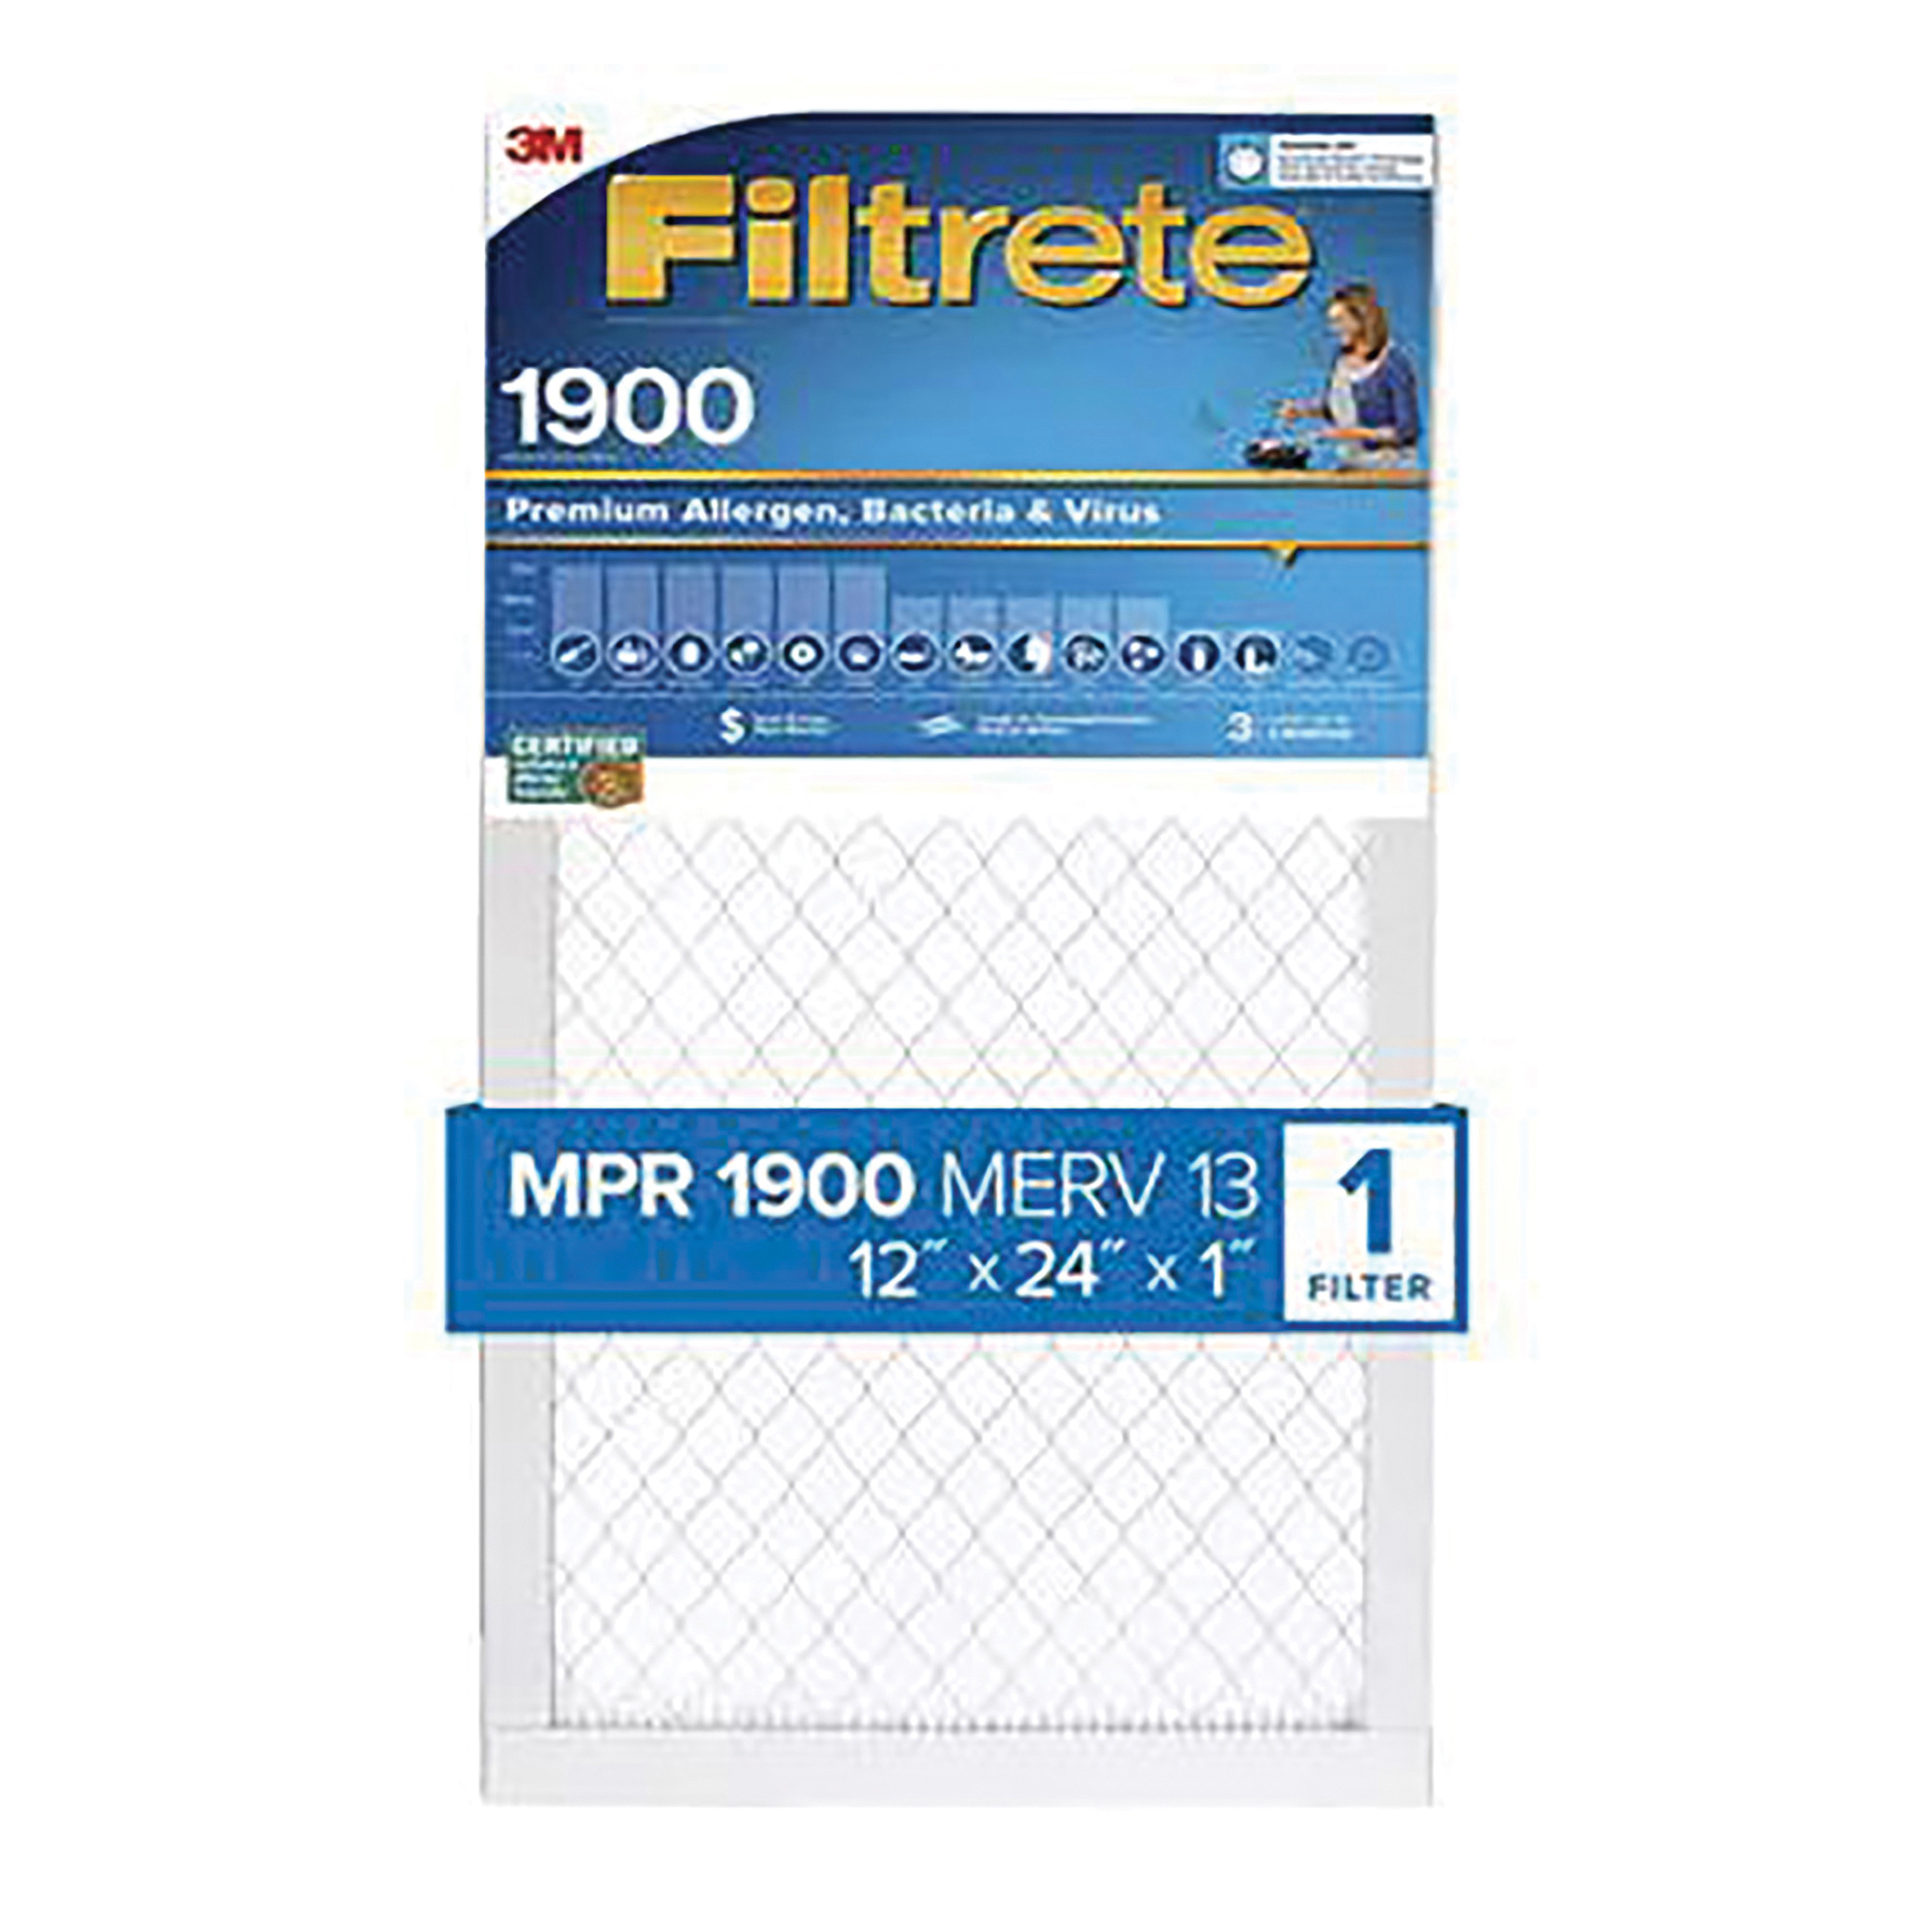 UT22-4 Air Filter, 20 in L, 30 in W, 13 MERV, 1900 MPR